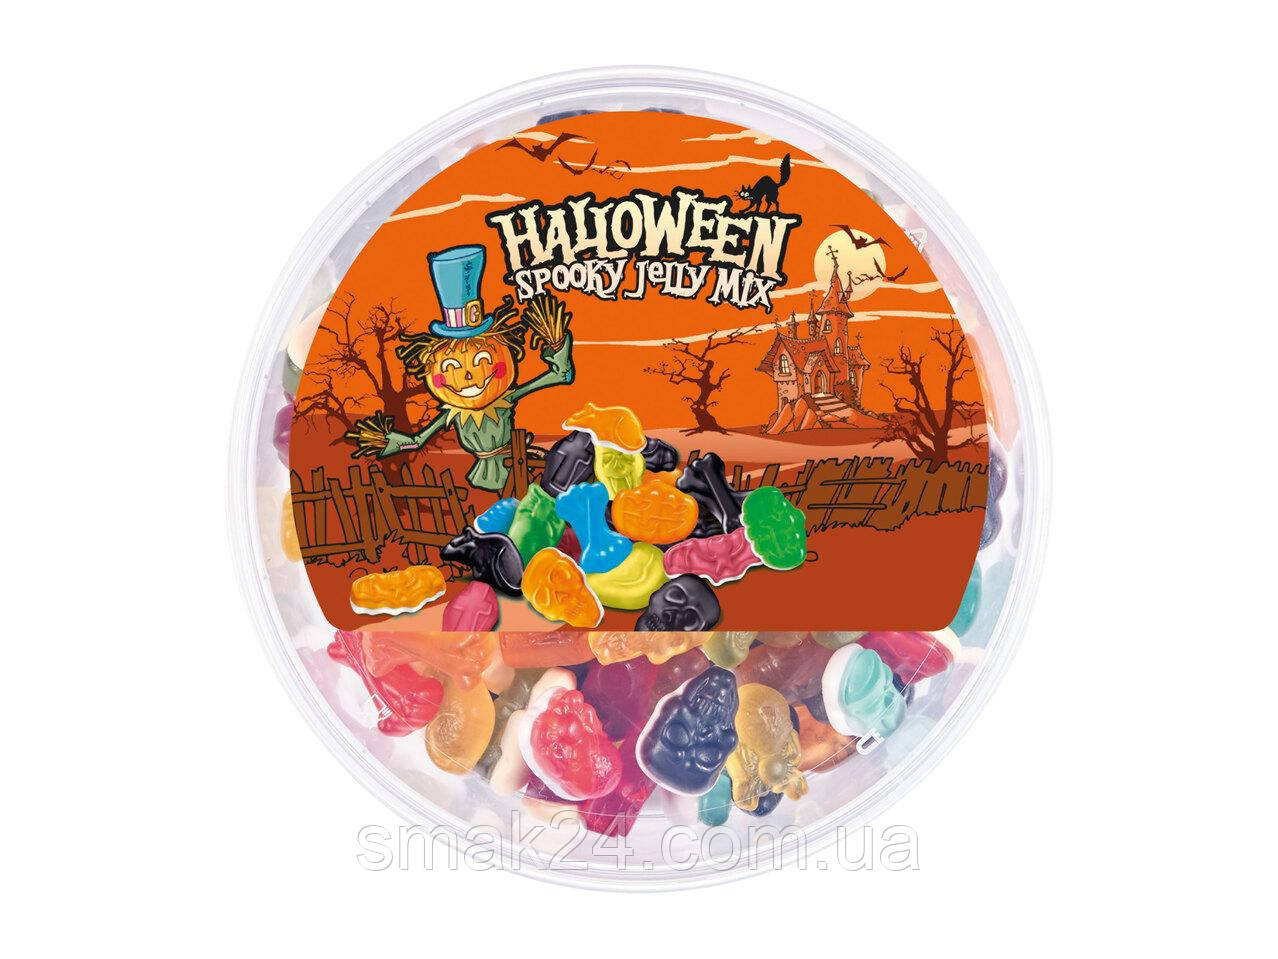 Желейні цукерки Гелловін із фруктовим смаком Halloween Spooky Jelly Mix 1000 г Польща